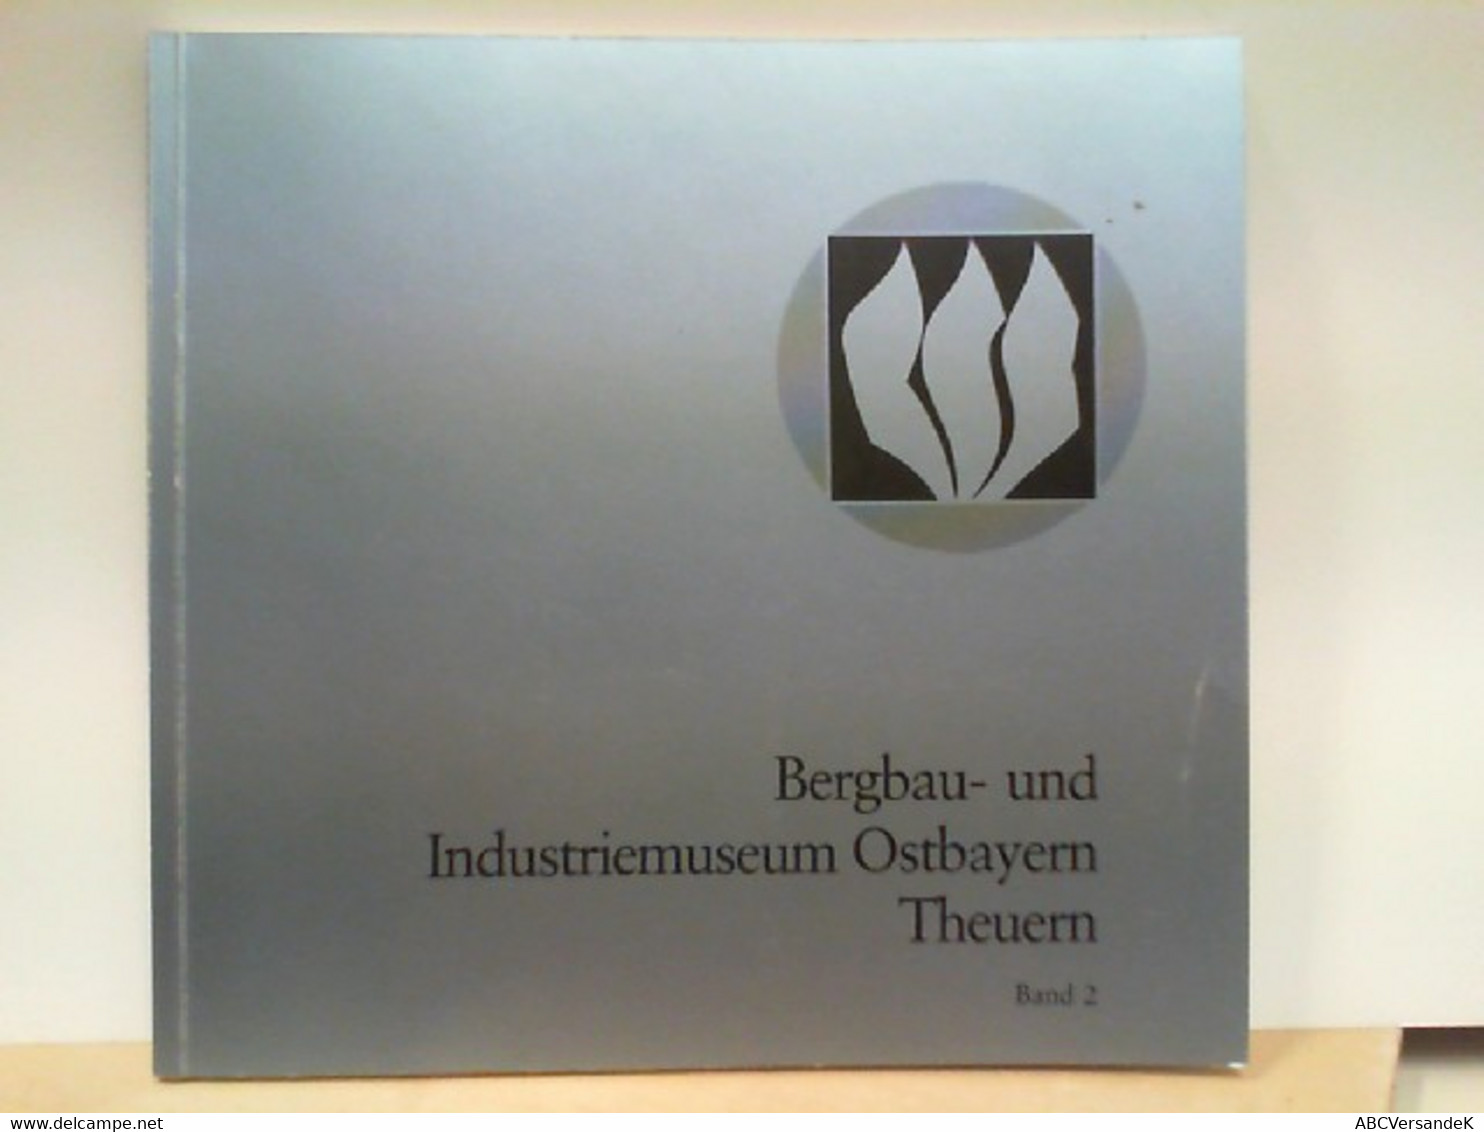 Bergbau - Und Industriemuseum Ostbayern In Theuern - Band 2 : Die Bergbauabteilung - Das Projekt Bayerische Ei - Deutschland Gesamt